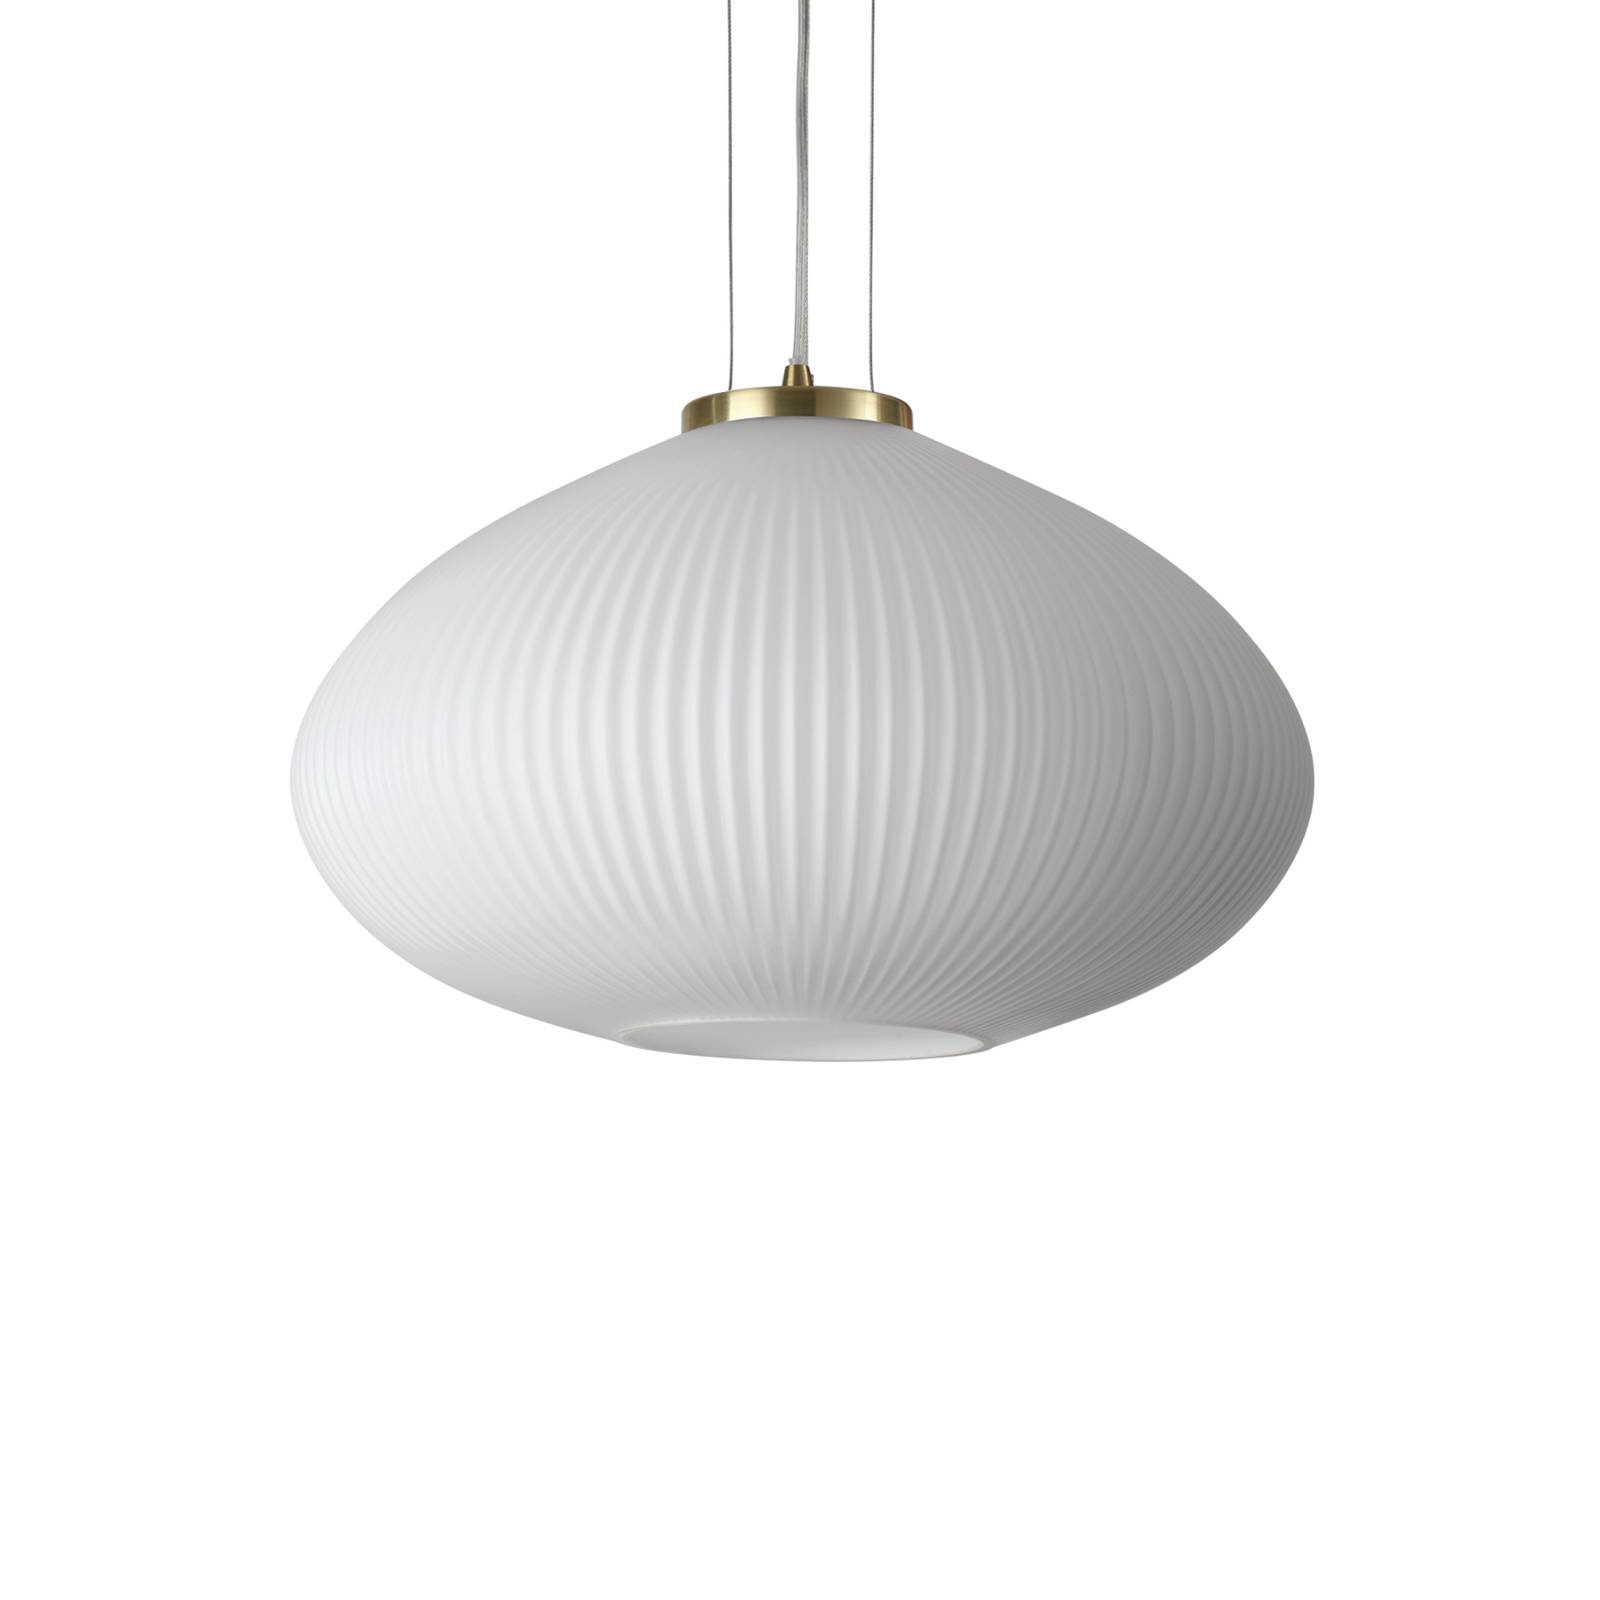 Závesná lampa Ideal Lux Plisse Ø 45 cm